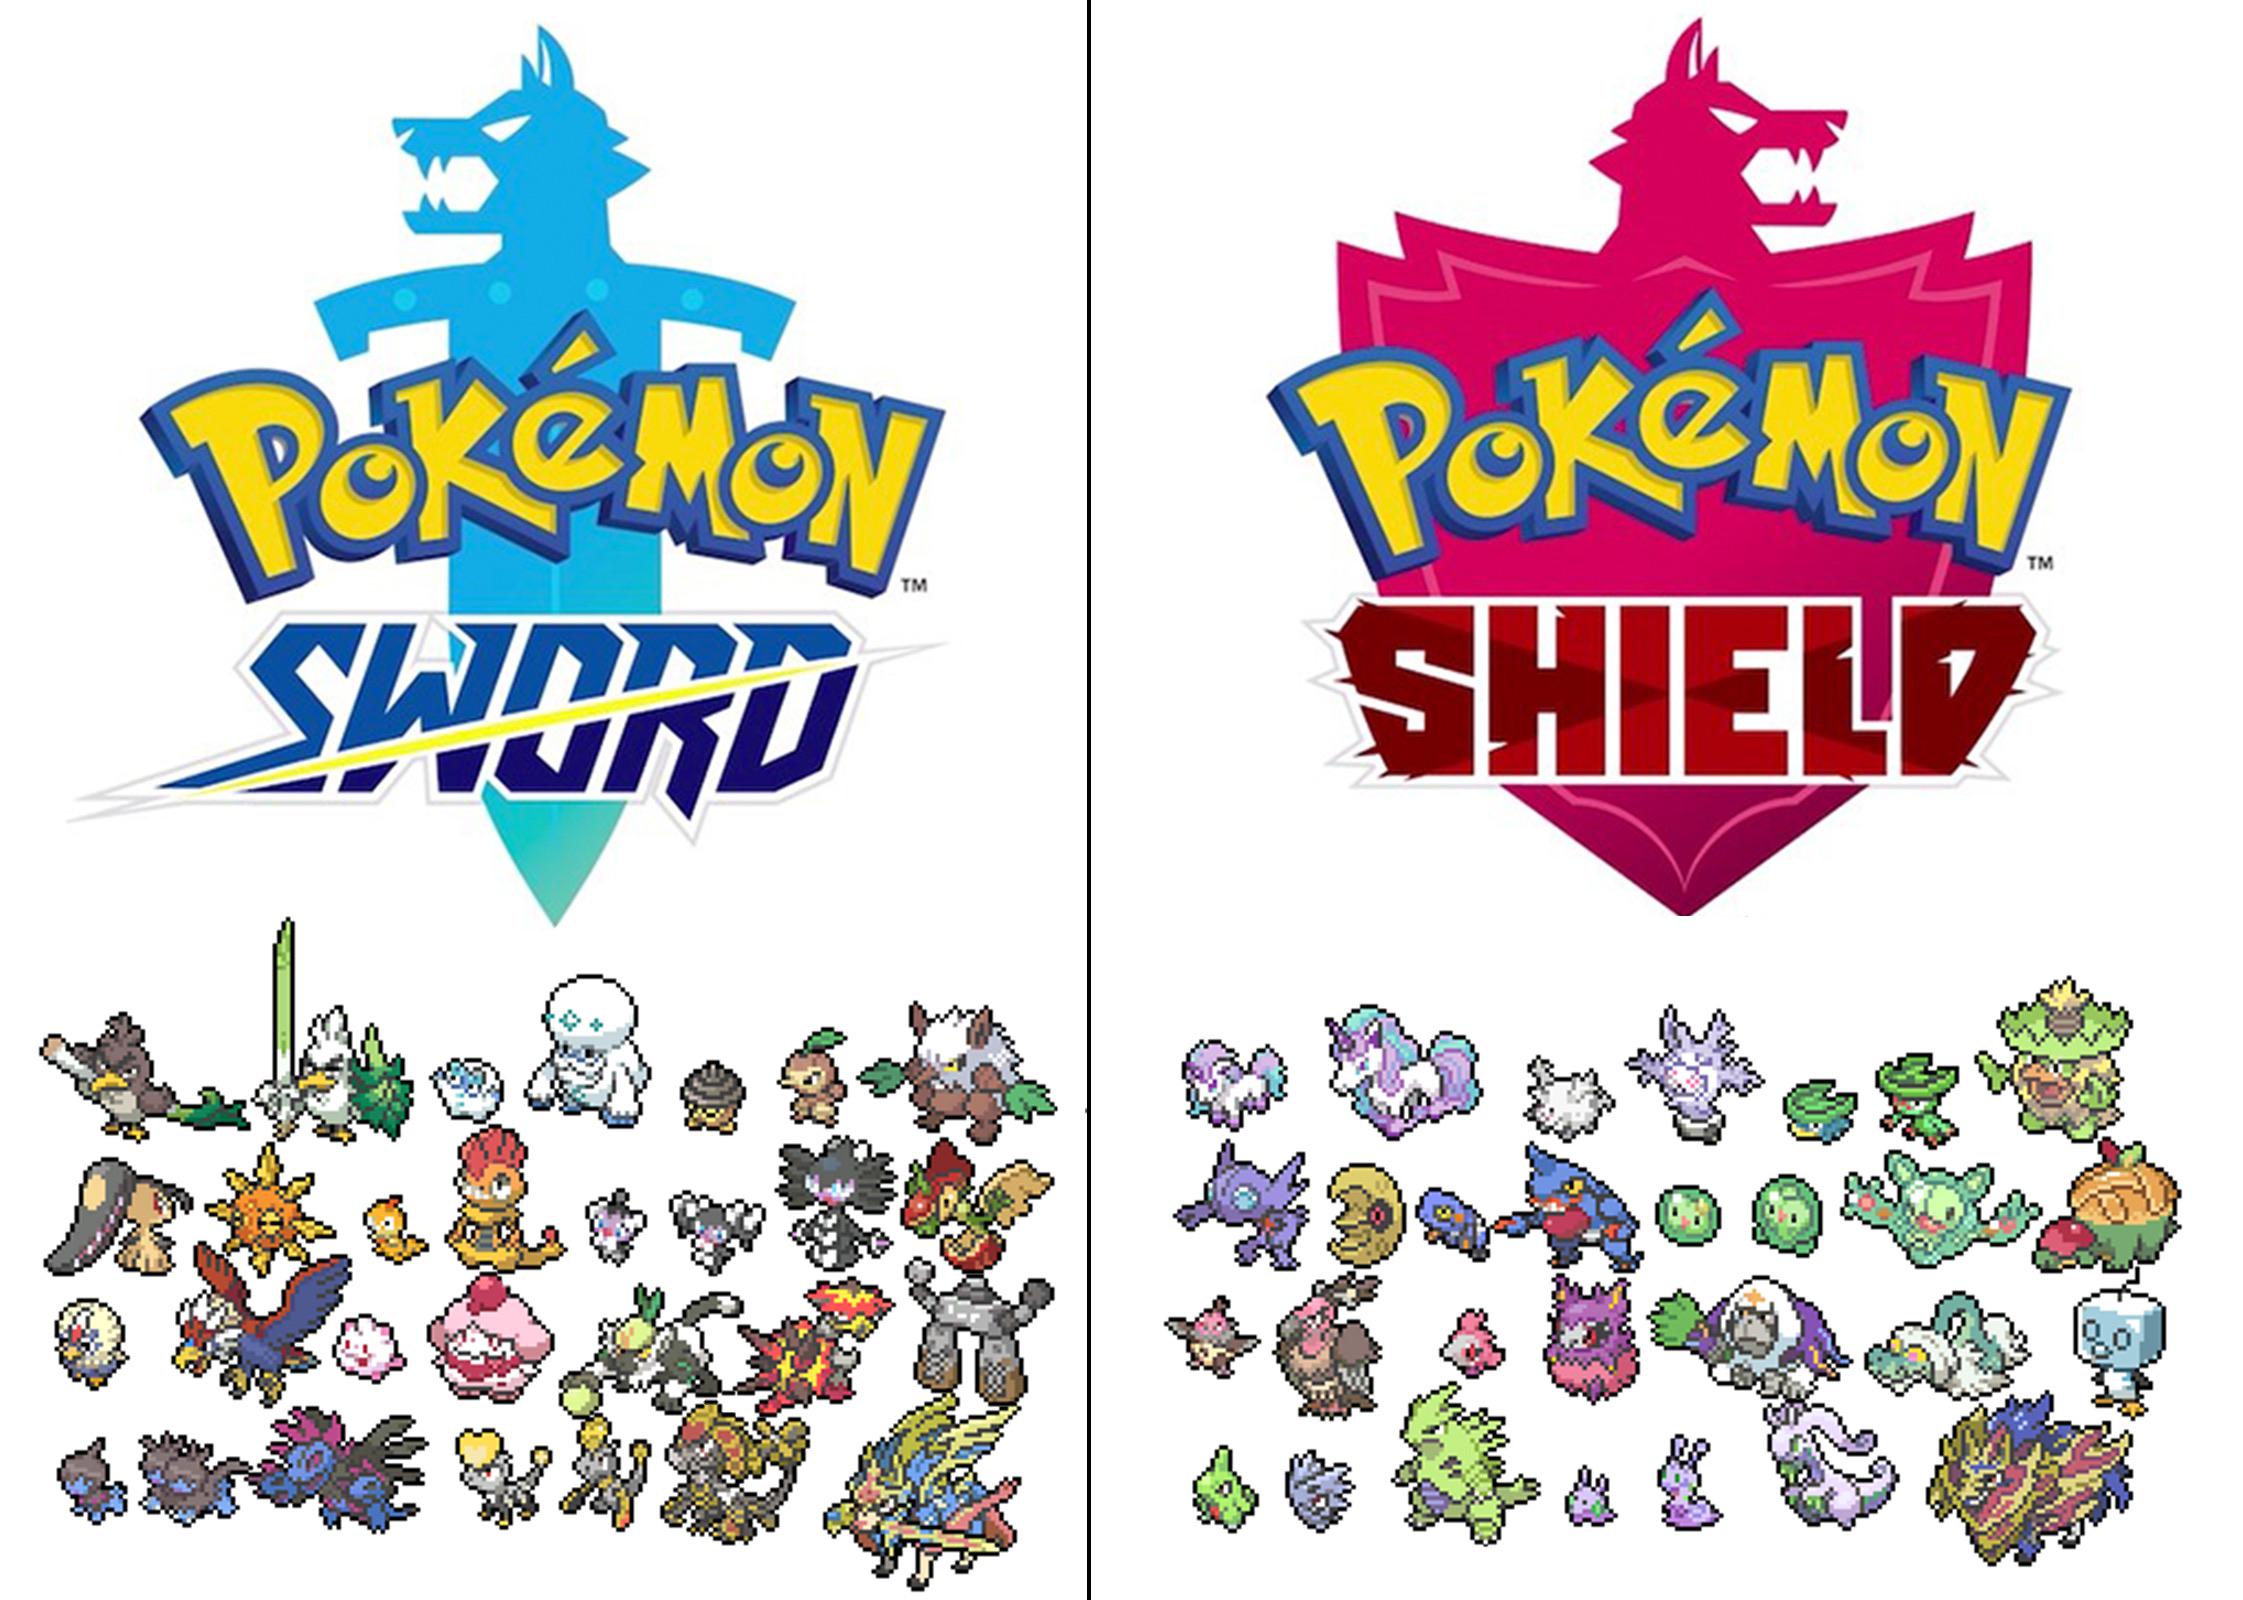 Pokémon Espada y Escudo: Pokémon exclusivos y diferencias entre